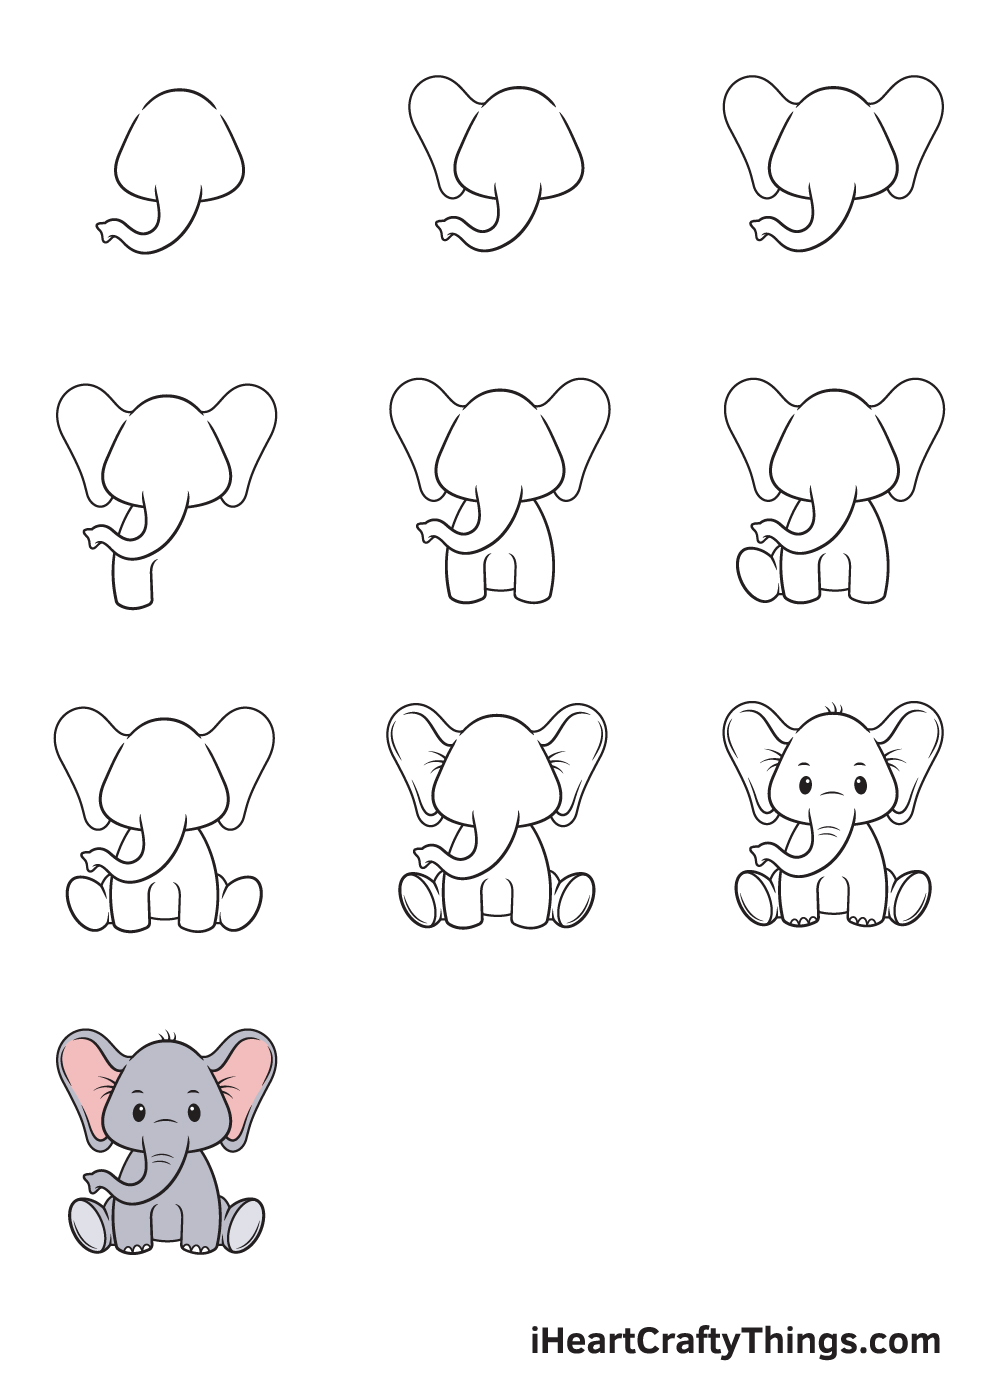 Vẽ voi trong 9 bước dễ dàng